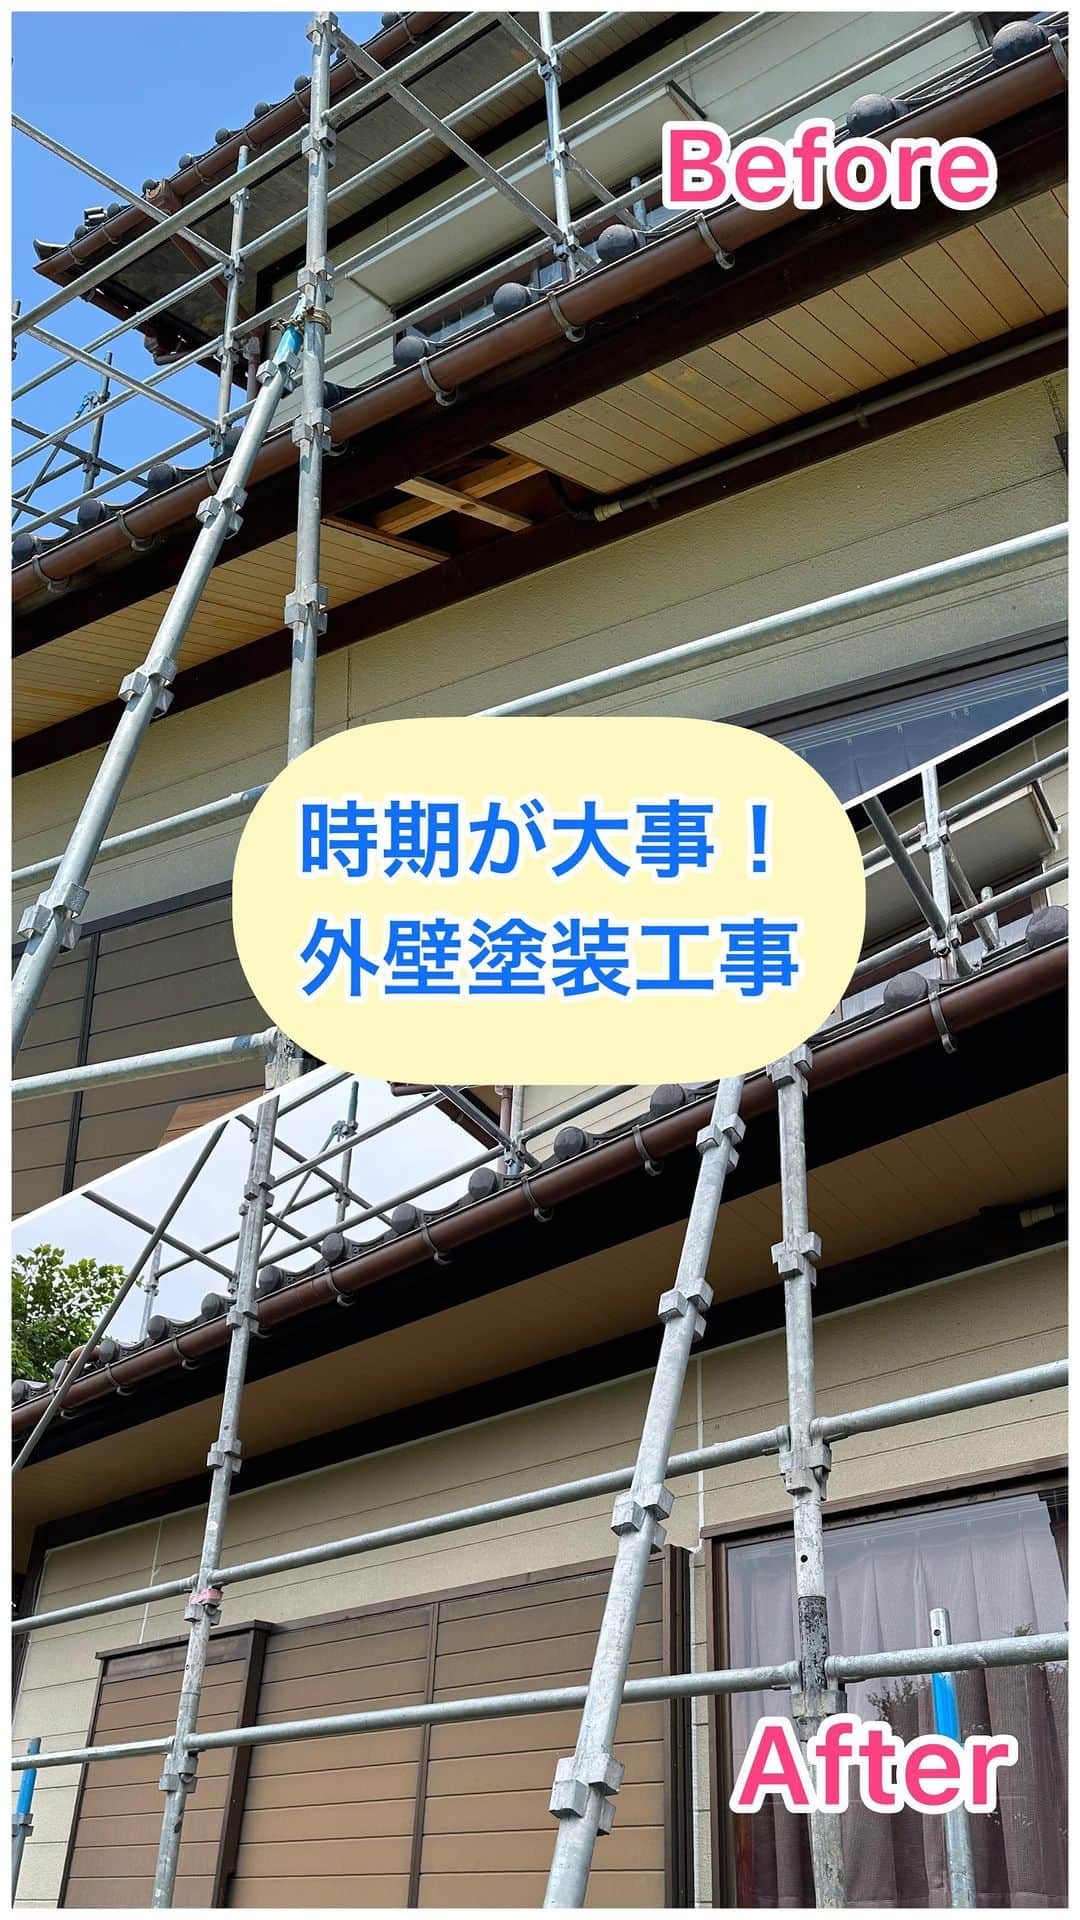 ミントゥの家のインスタグラム：「富山県砺波市の住まいと庭のリフォーム屋さん𖤣𖥧𖥣𖡡𖥧𖤣 株式会社ミズカミです　@mintou__home  ┈┈┈┈┈┈┈┈┈┈┈┈┈┈┈┈┈┈┈┈ 外壁塗装は時期が大事！  時期を過ぎると塗装ができなくなります💦  ♦︎最新情報はHPにて随時更新♦︎  @mintou__home プロフィールリンクより  また、40代、50代の家づくりの情報をYouTubeミズカミちゃんねるでも発信していきます！  https://youtube.com/channel/UCyKZiAmm8lTqWsR9zZYpJvQ  HPよりYouTubeにアクセスできます。  是非チェックしてみて下さいね☺︎  ┈┈┈┈┈┈┈┈┈┈┈┈┈┈┈┈┈┈┈┈   #株式会社ミズカミ #ミズカミ #富山 #砺波市 #南砺市 #小矢部市 #高岡市 #砺波リフォーム#南砺リフォーム #小矢部リフォーム #高岡リフォーム #新築 #リフォーム #リノベーション #家づくり #自然素材の家 #新築一戸建て #マイホーム #新居 #住宅会社 #戸建て #」